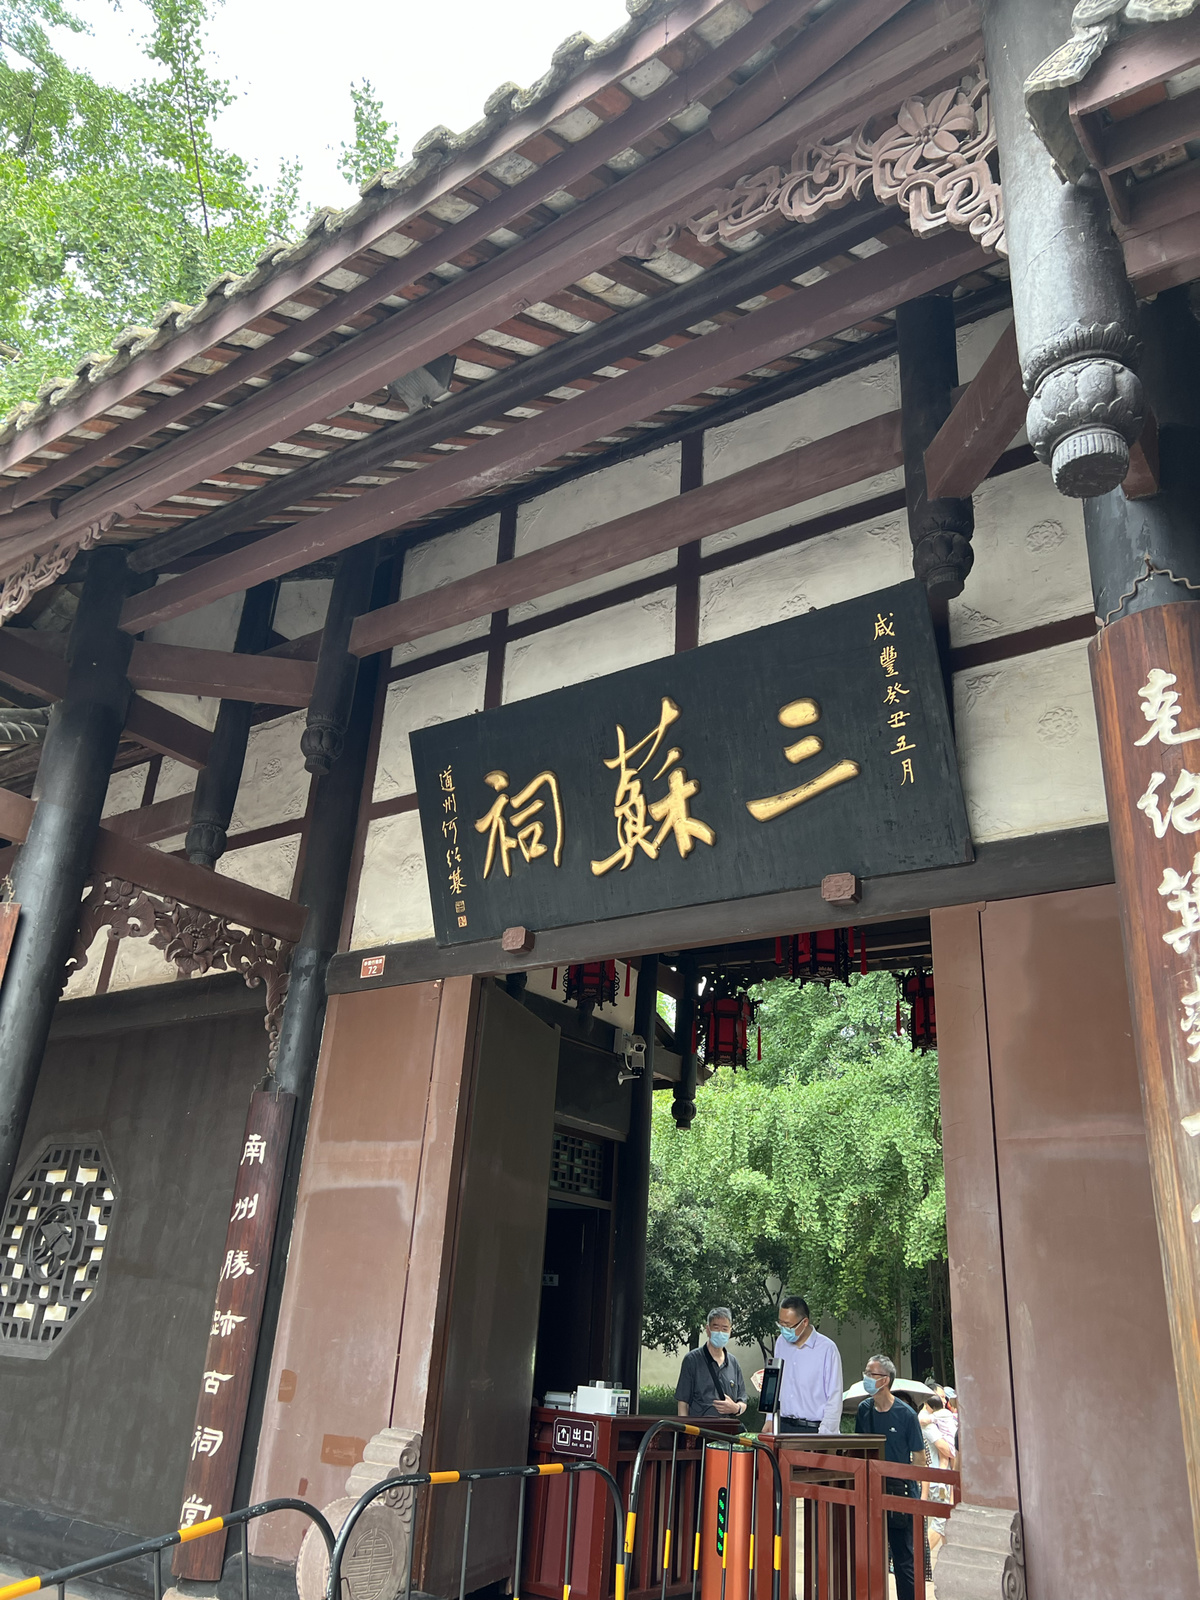 一座写有亚洲文字和天坛标志的建筑的入口